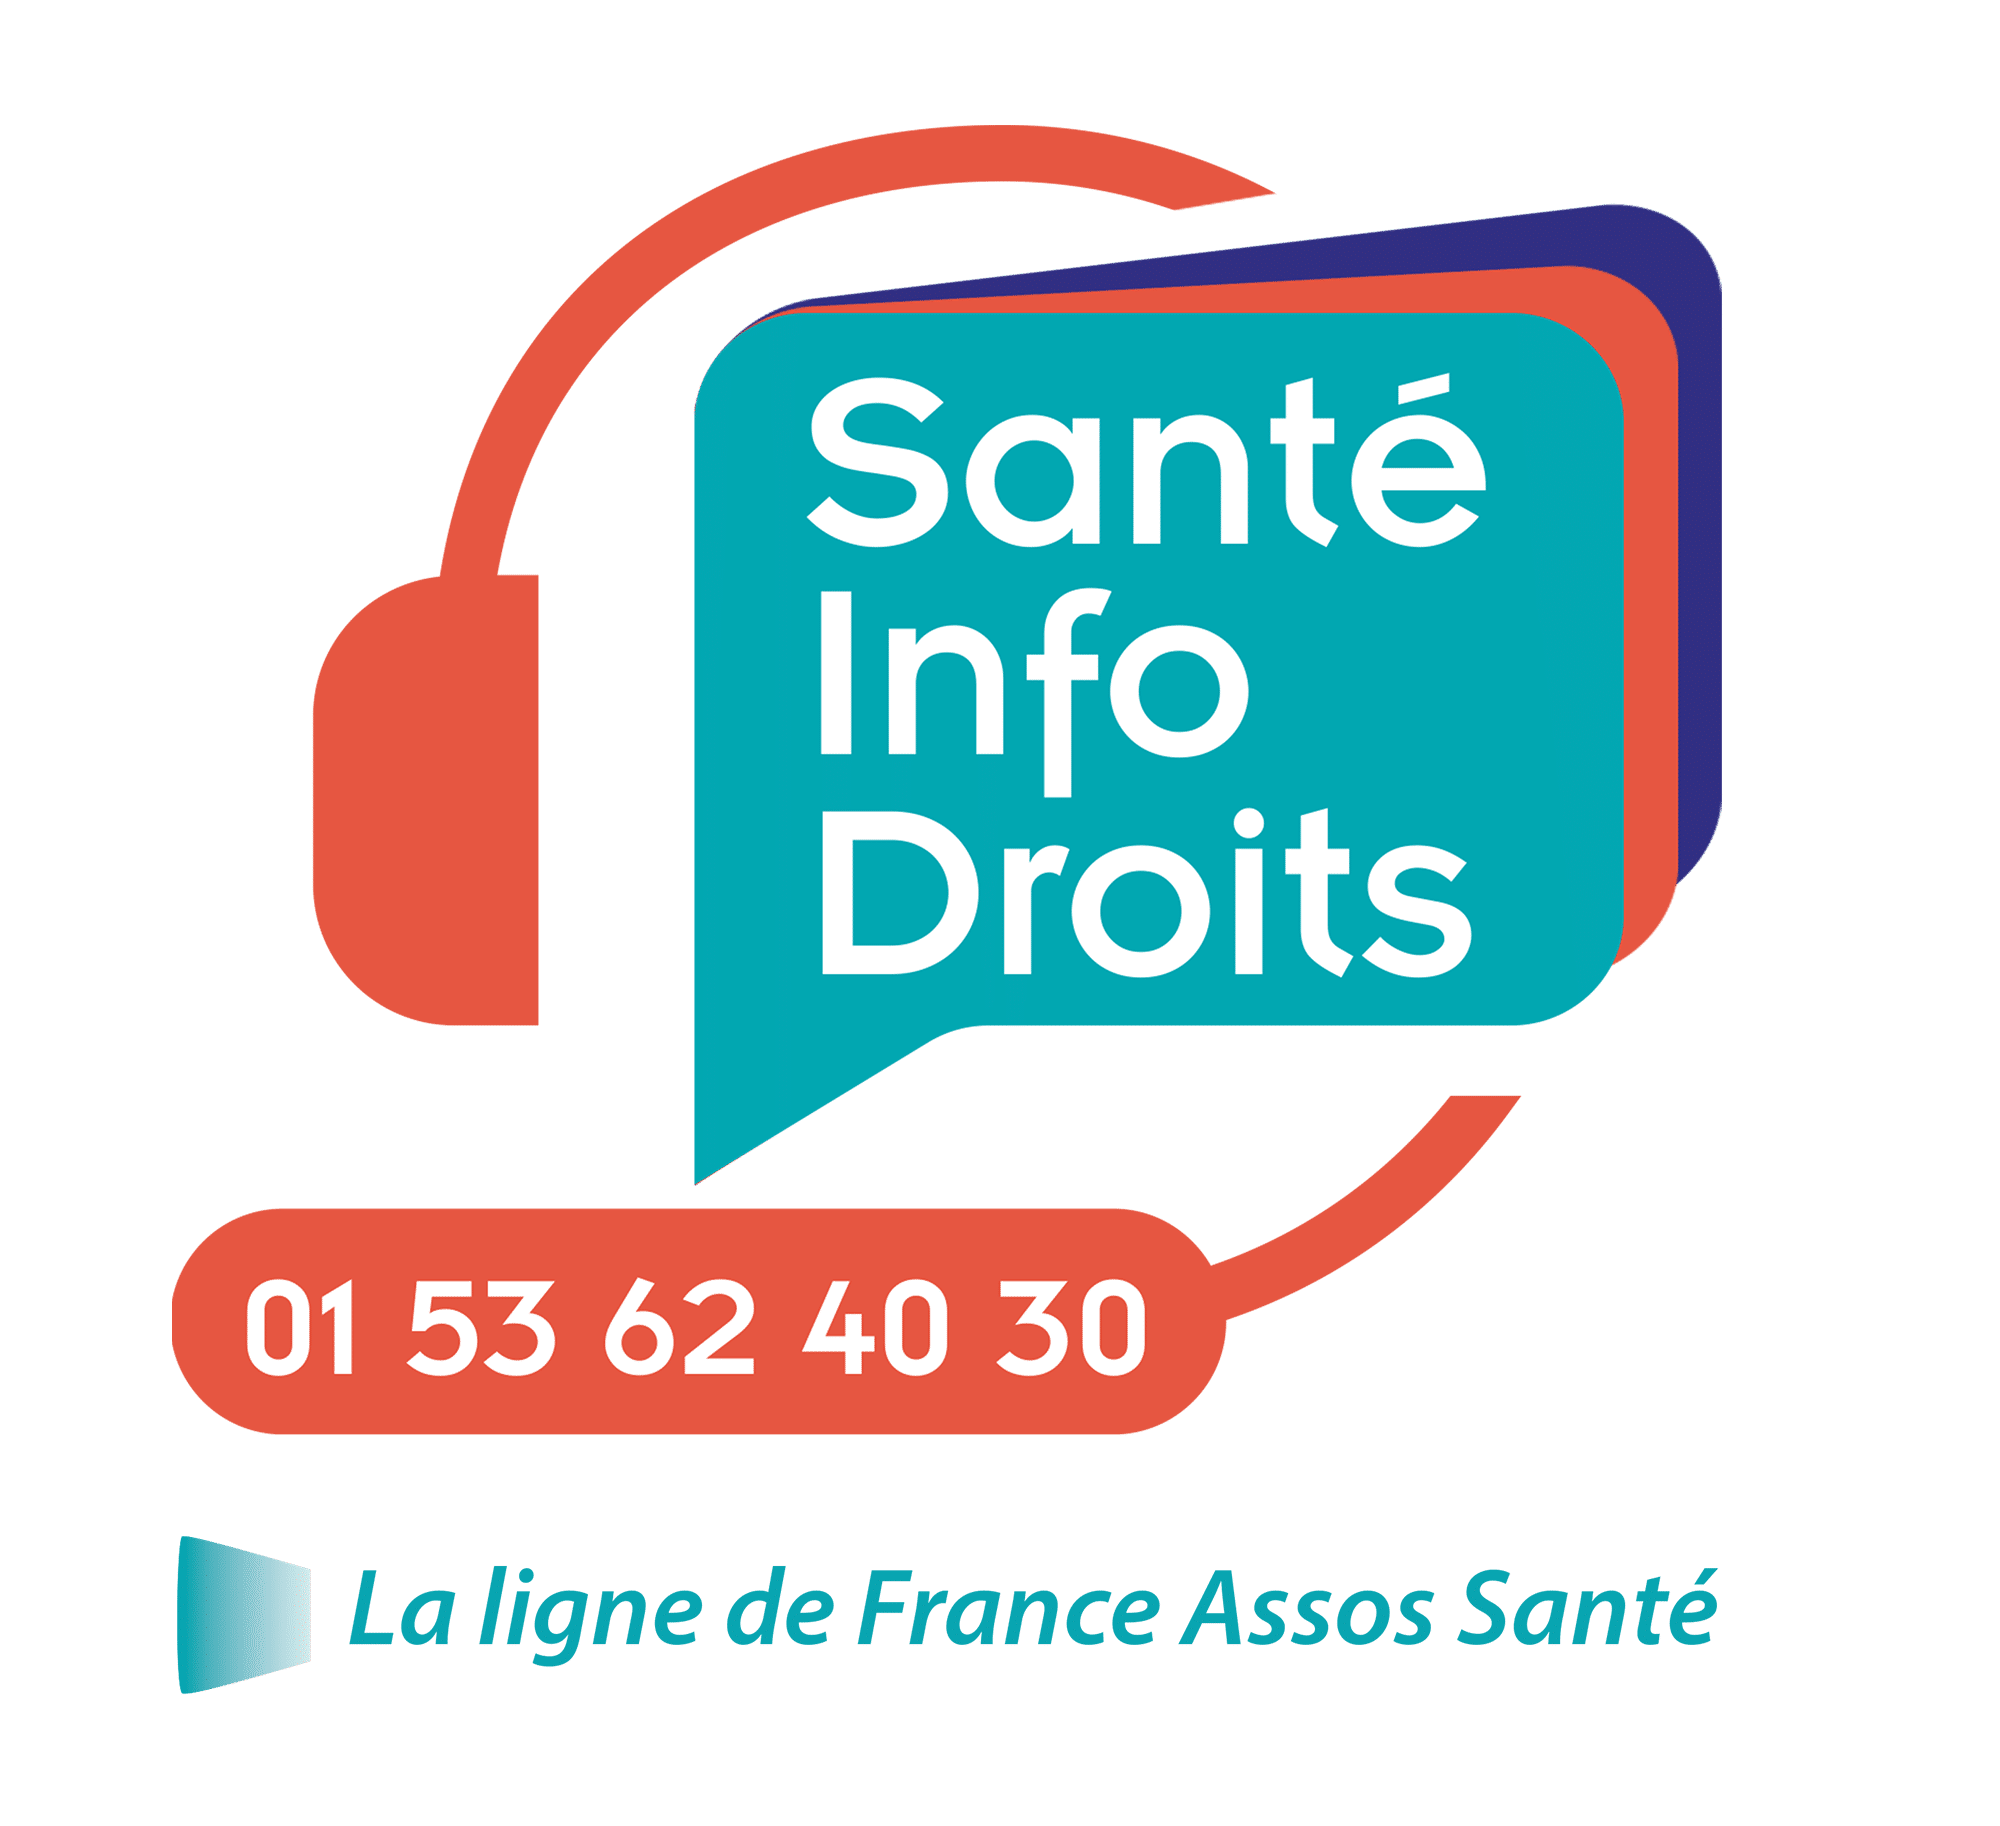 sante-info-droits-2